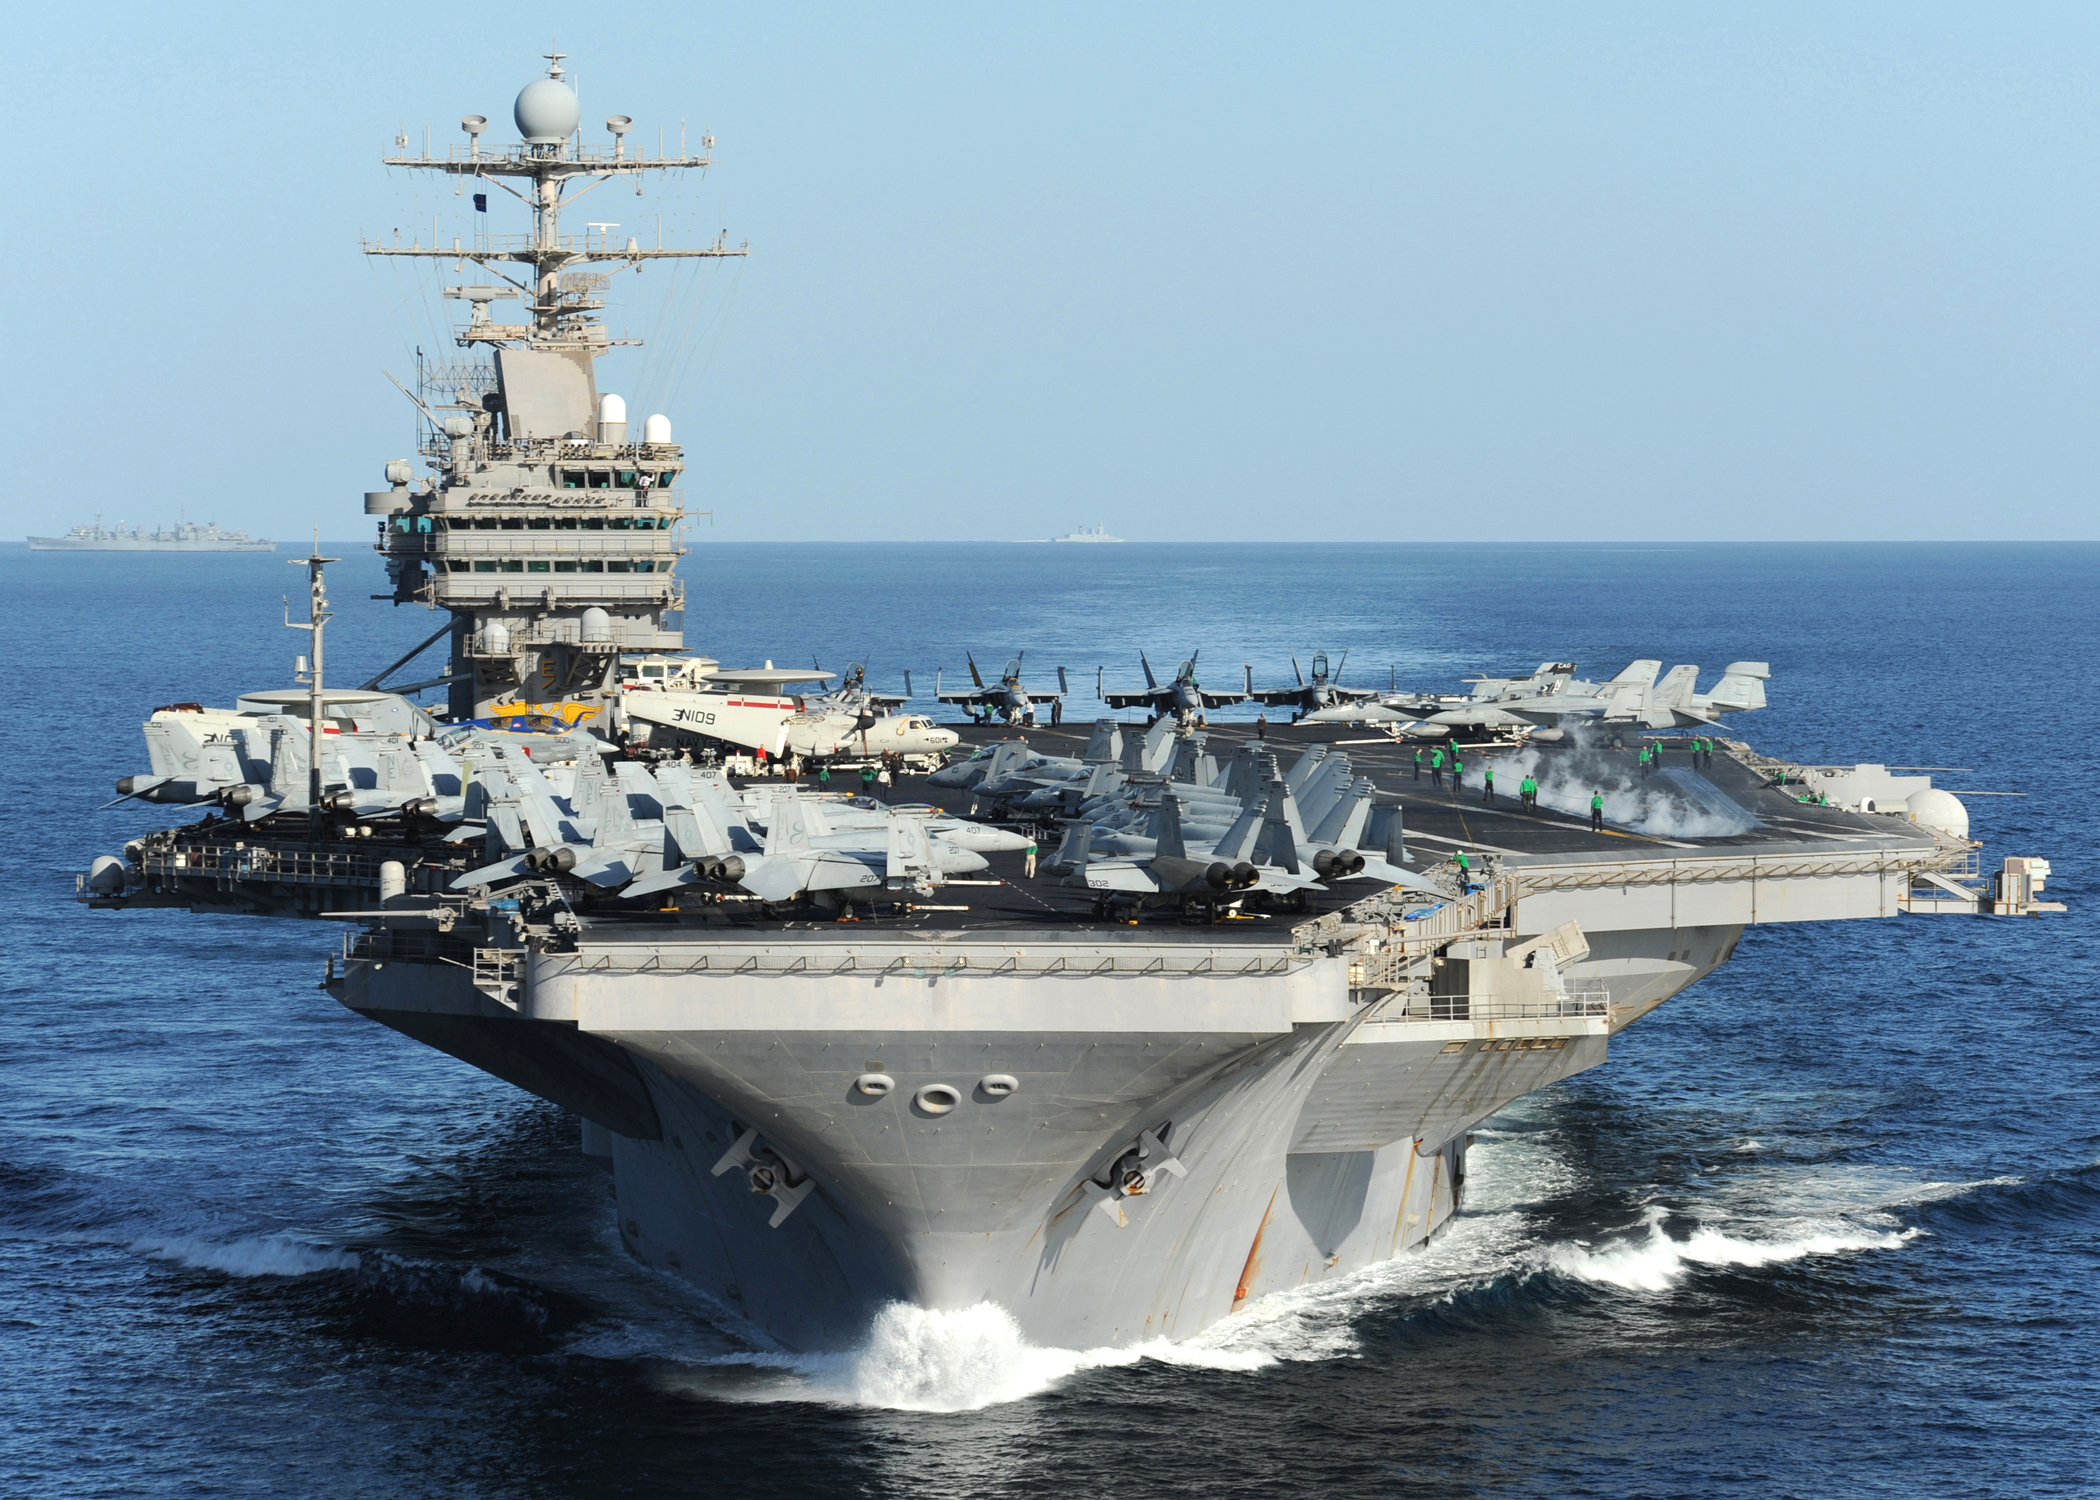 USS Abraham Lincoln (CVN-72) Backgrounds, Compatible - PC, Mobile, Gadgets| 2100x1500 px